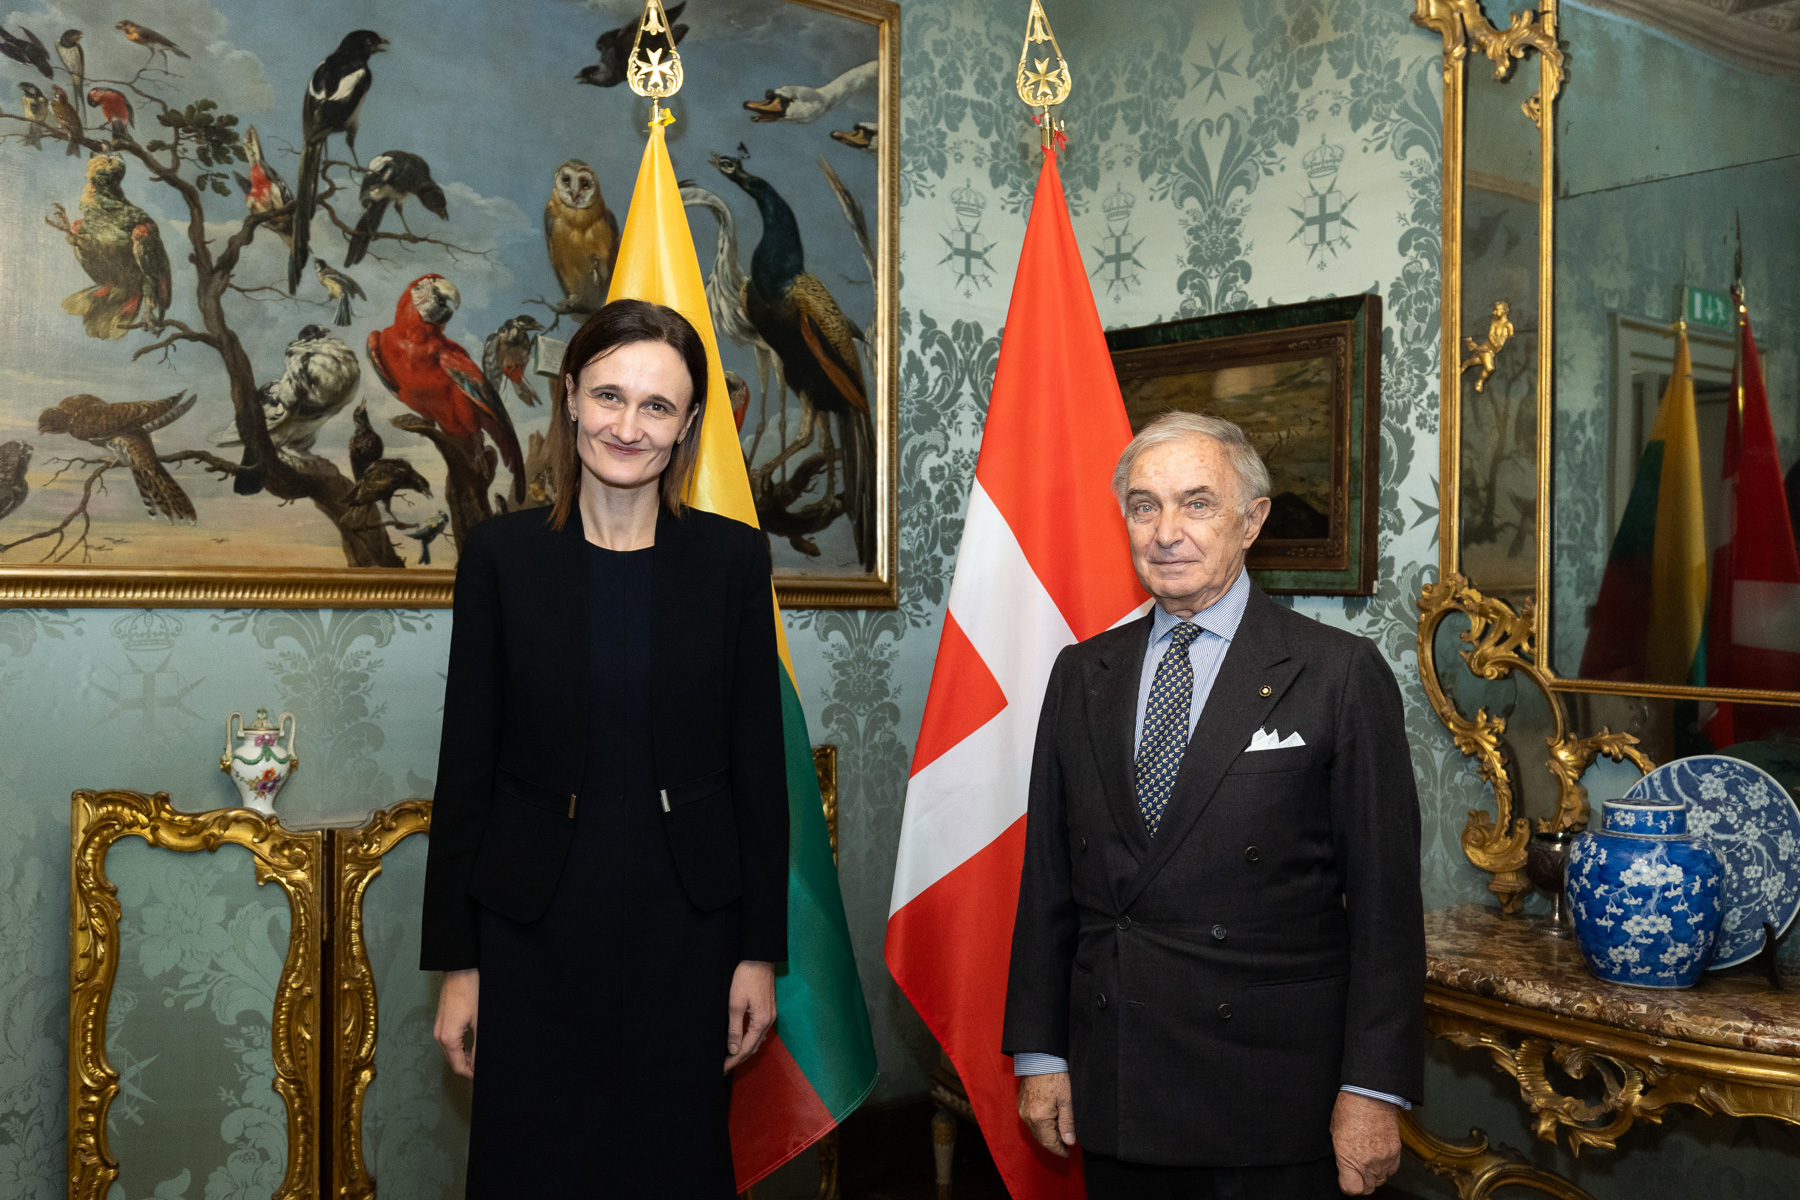 Il Gran Cancelliere incontra la Presidente del Parlamento della Repubblica di Lituania